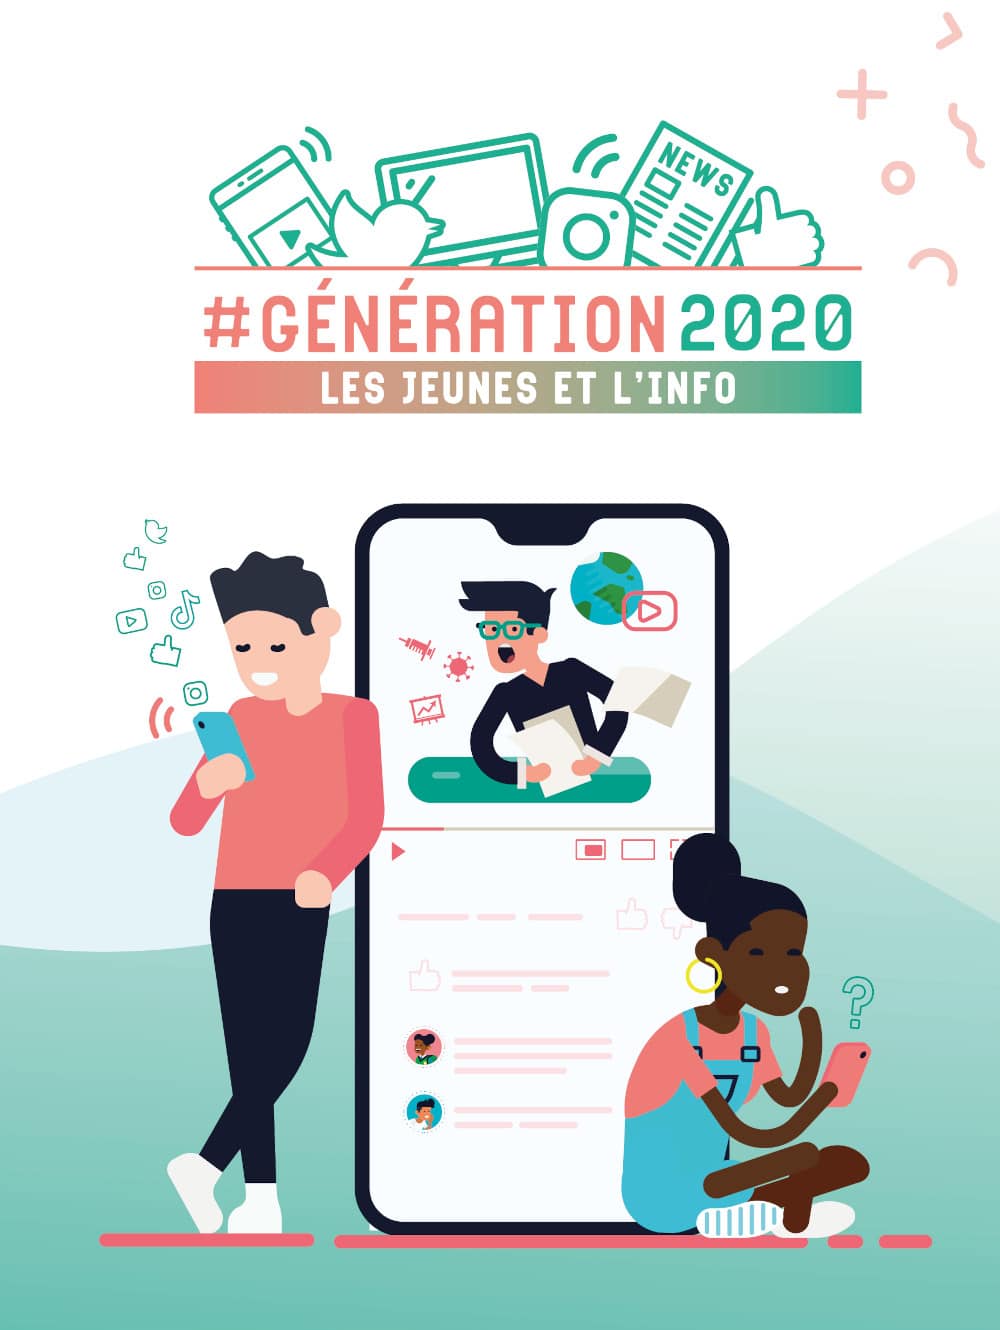 La #Génération 2020, les jeunes et l'info (couverture de la publication).